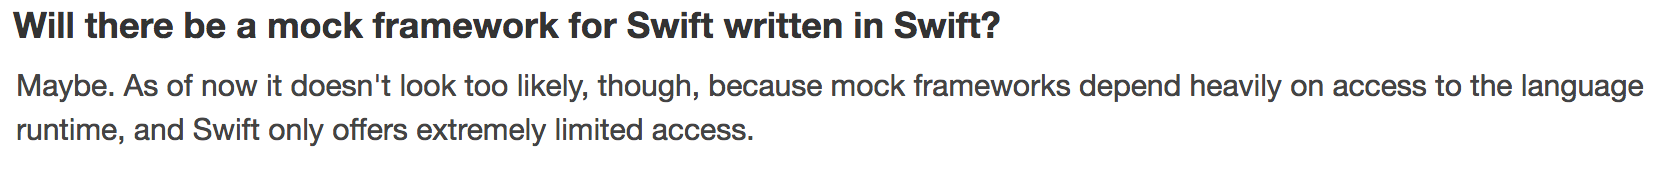 No mocking frameworks for Swift